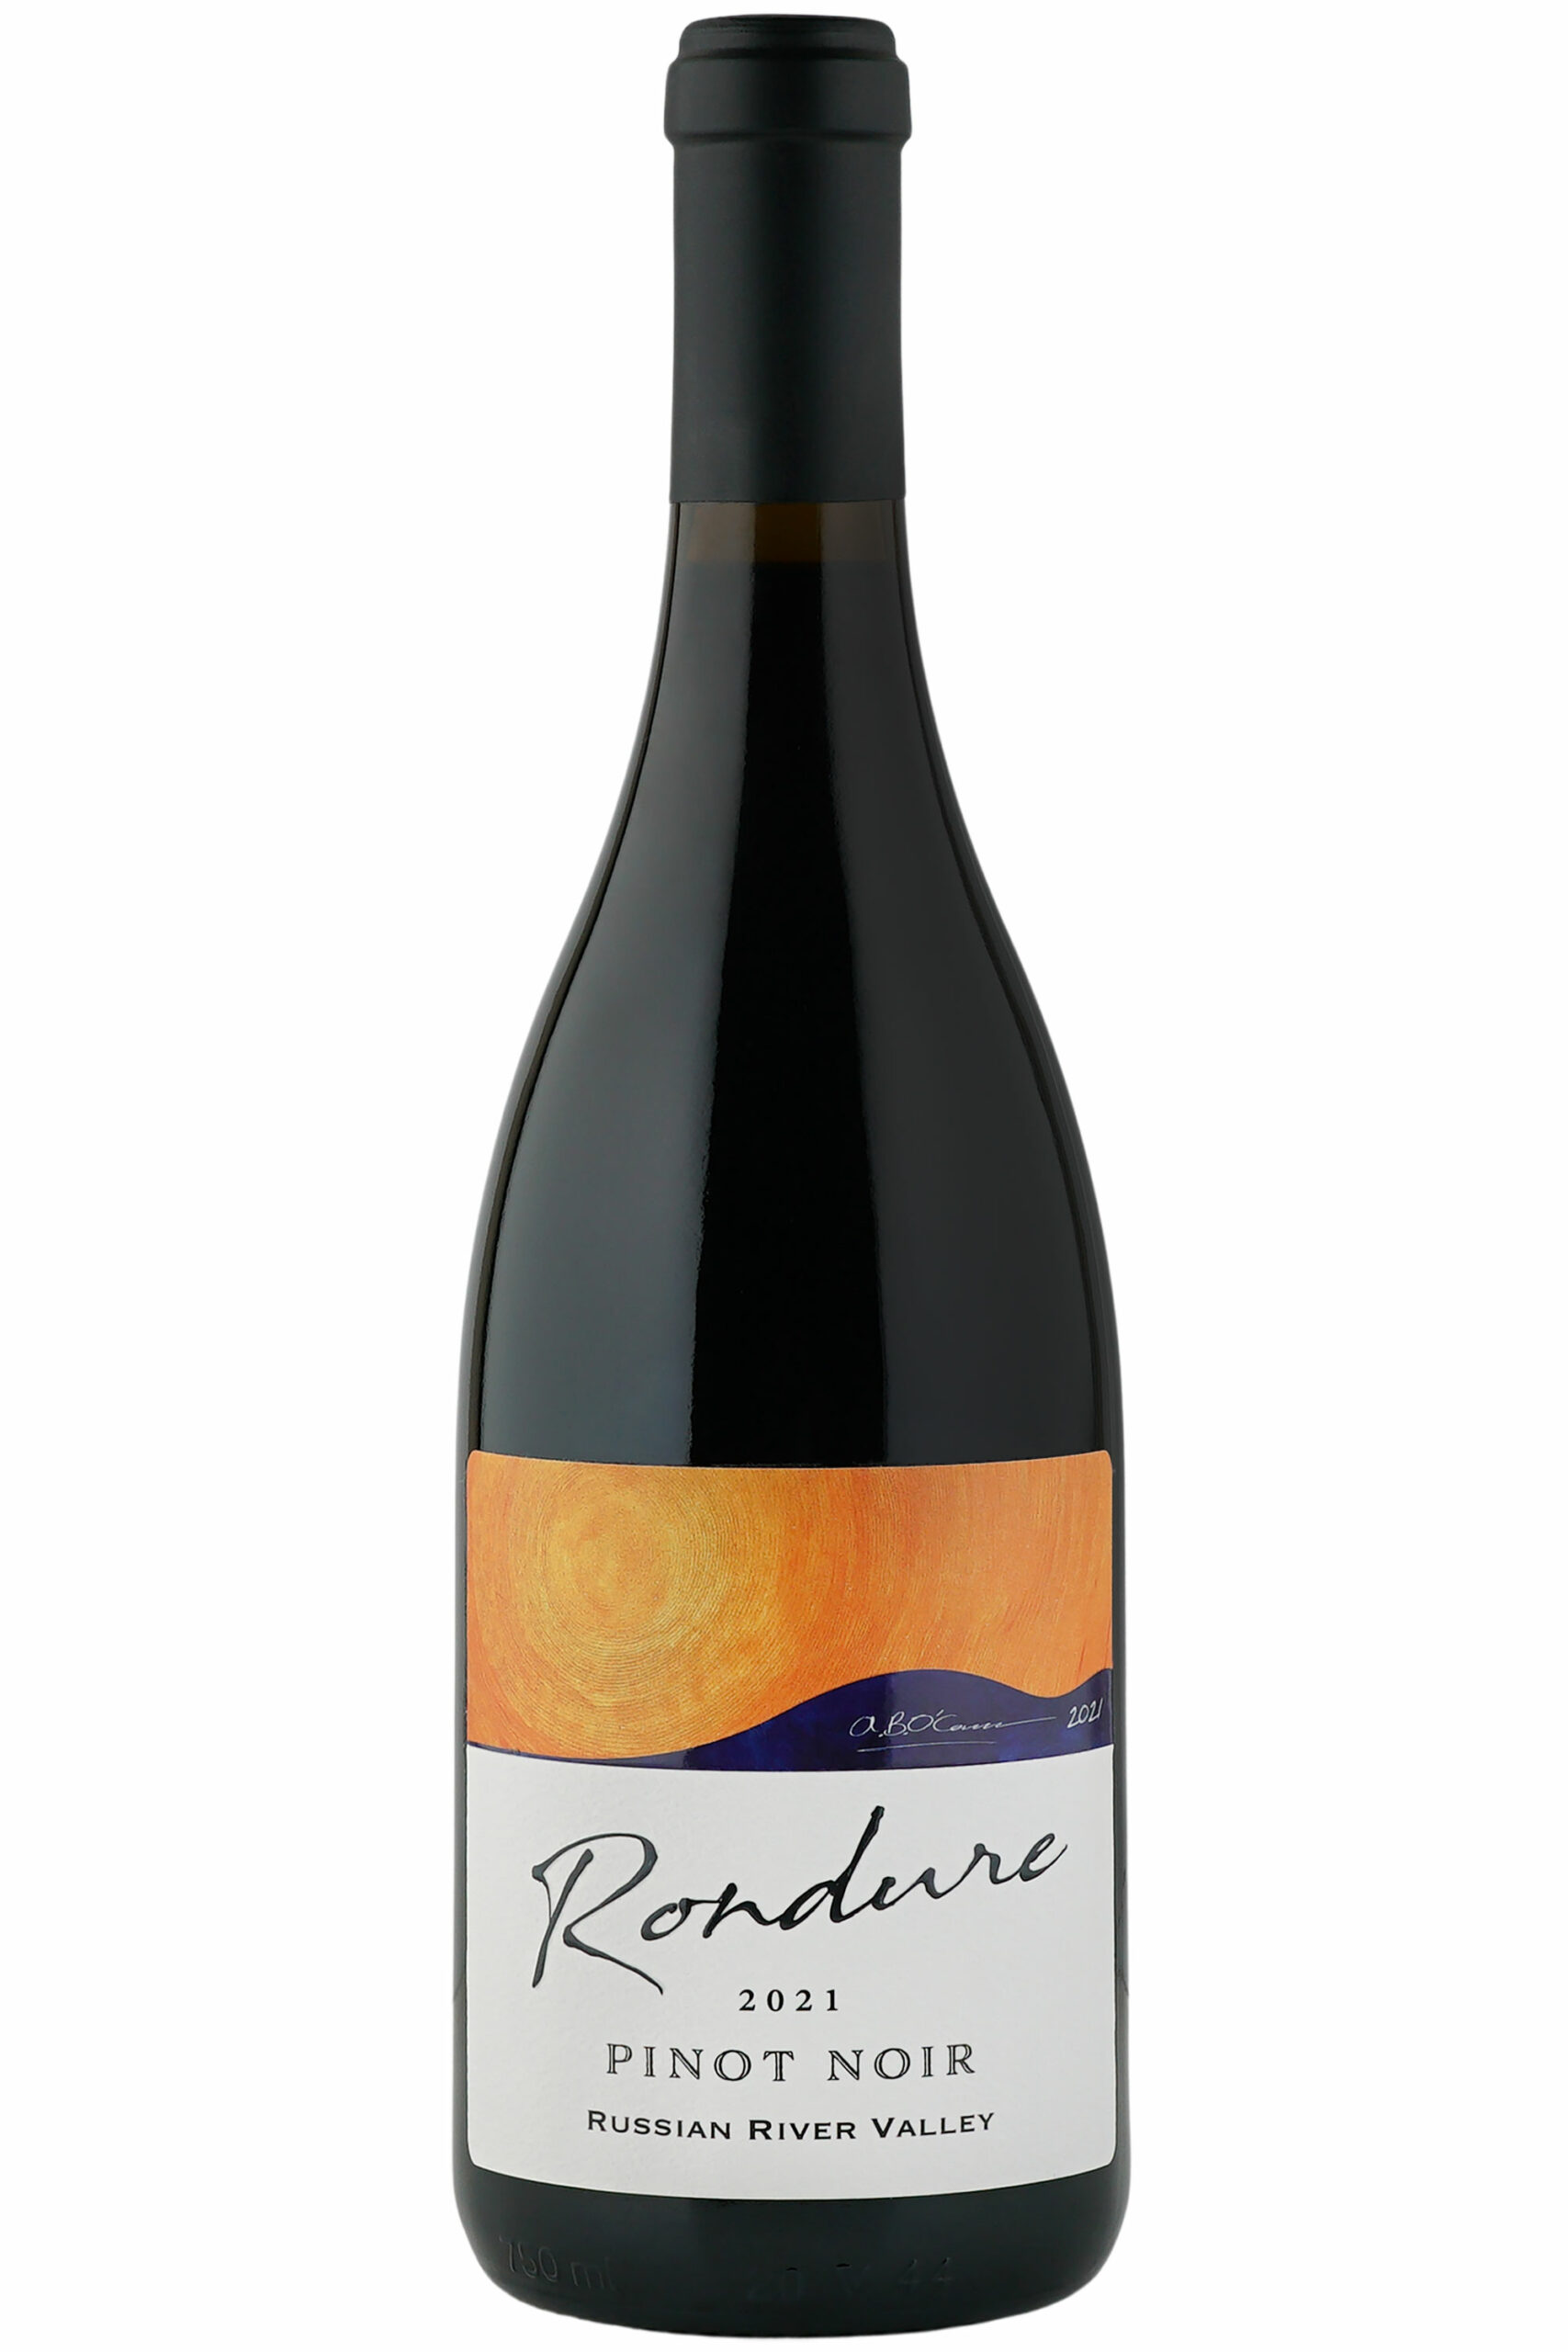 Bottle of 2021 Rondure Russian River Valley Pinot Noir